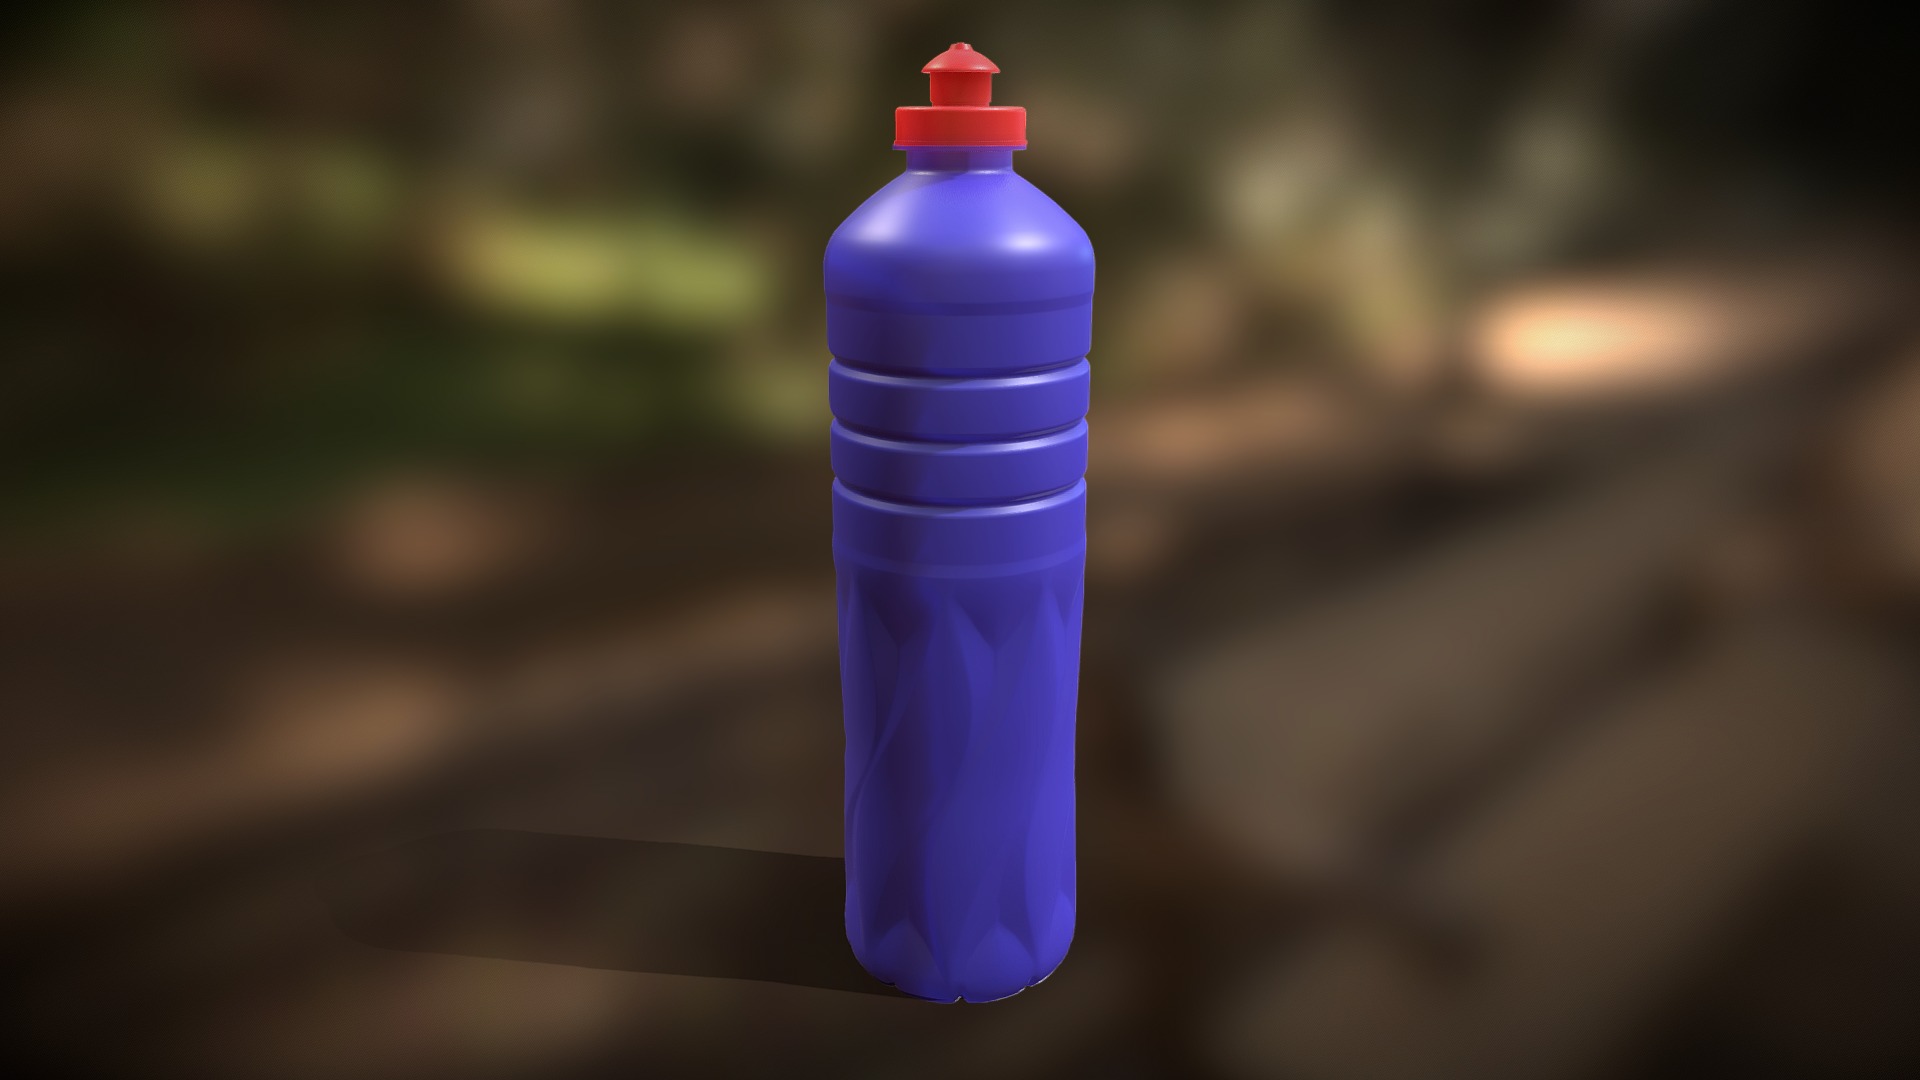 3D model Bottle Brihante001a - This is a 3D model of the Bottle Brihante001a. The 3D model is about a purple plastic bottle.